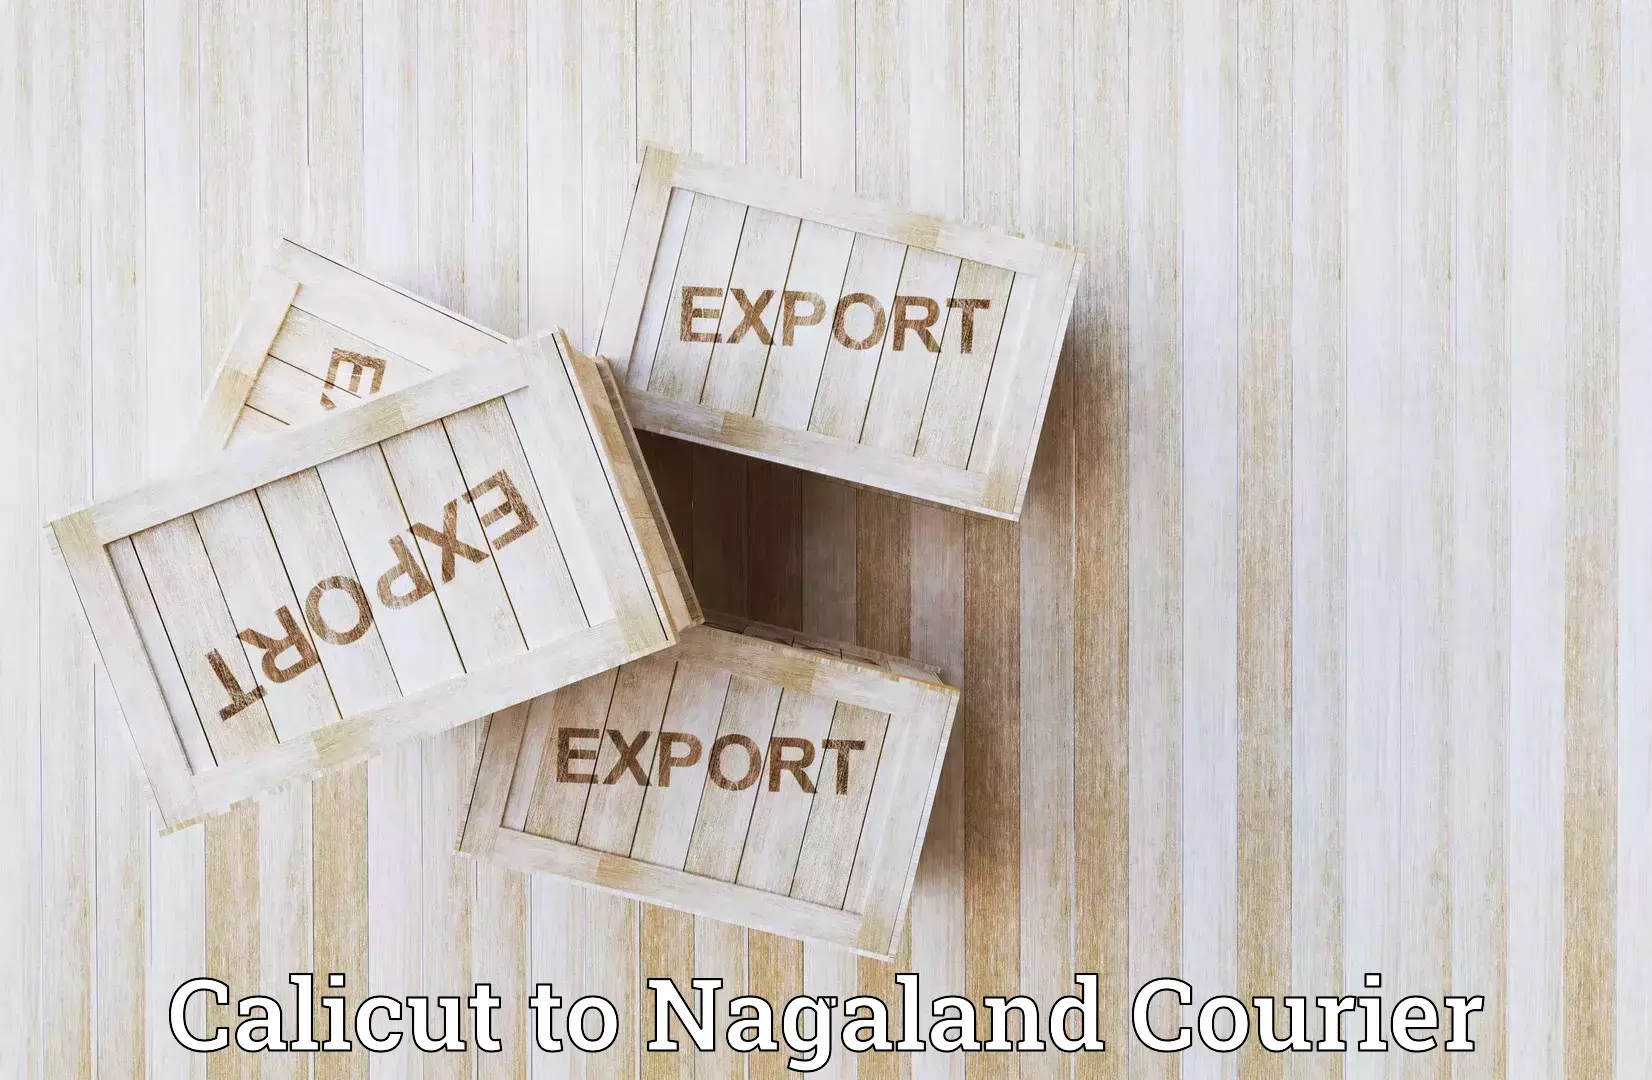 User-friendly courier app Calicut to Nagaland